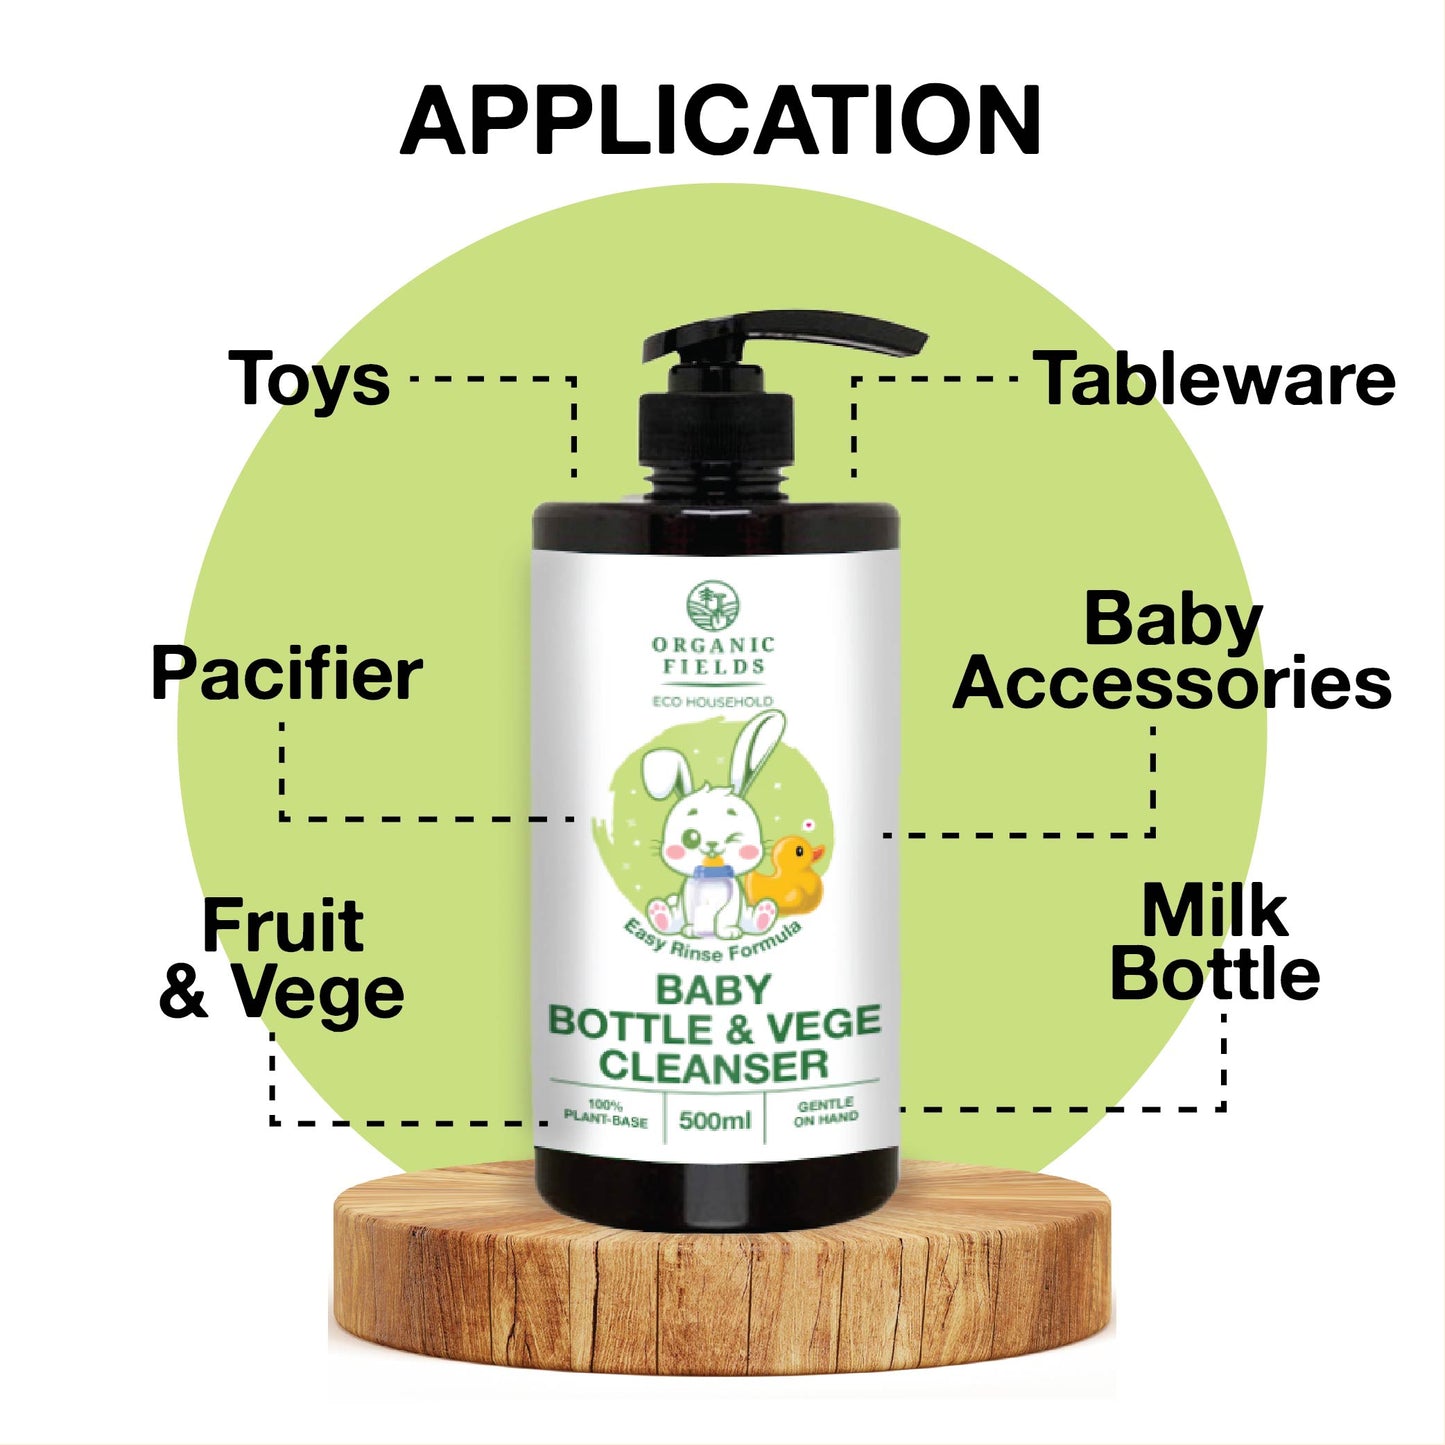 婴儿奶瓶清洁剂和蔬菜清洗剂 (500ml) |植物性